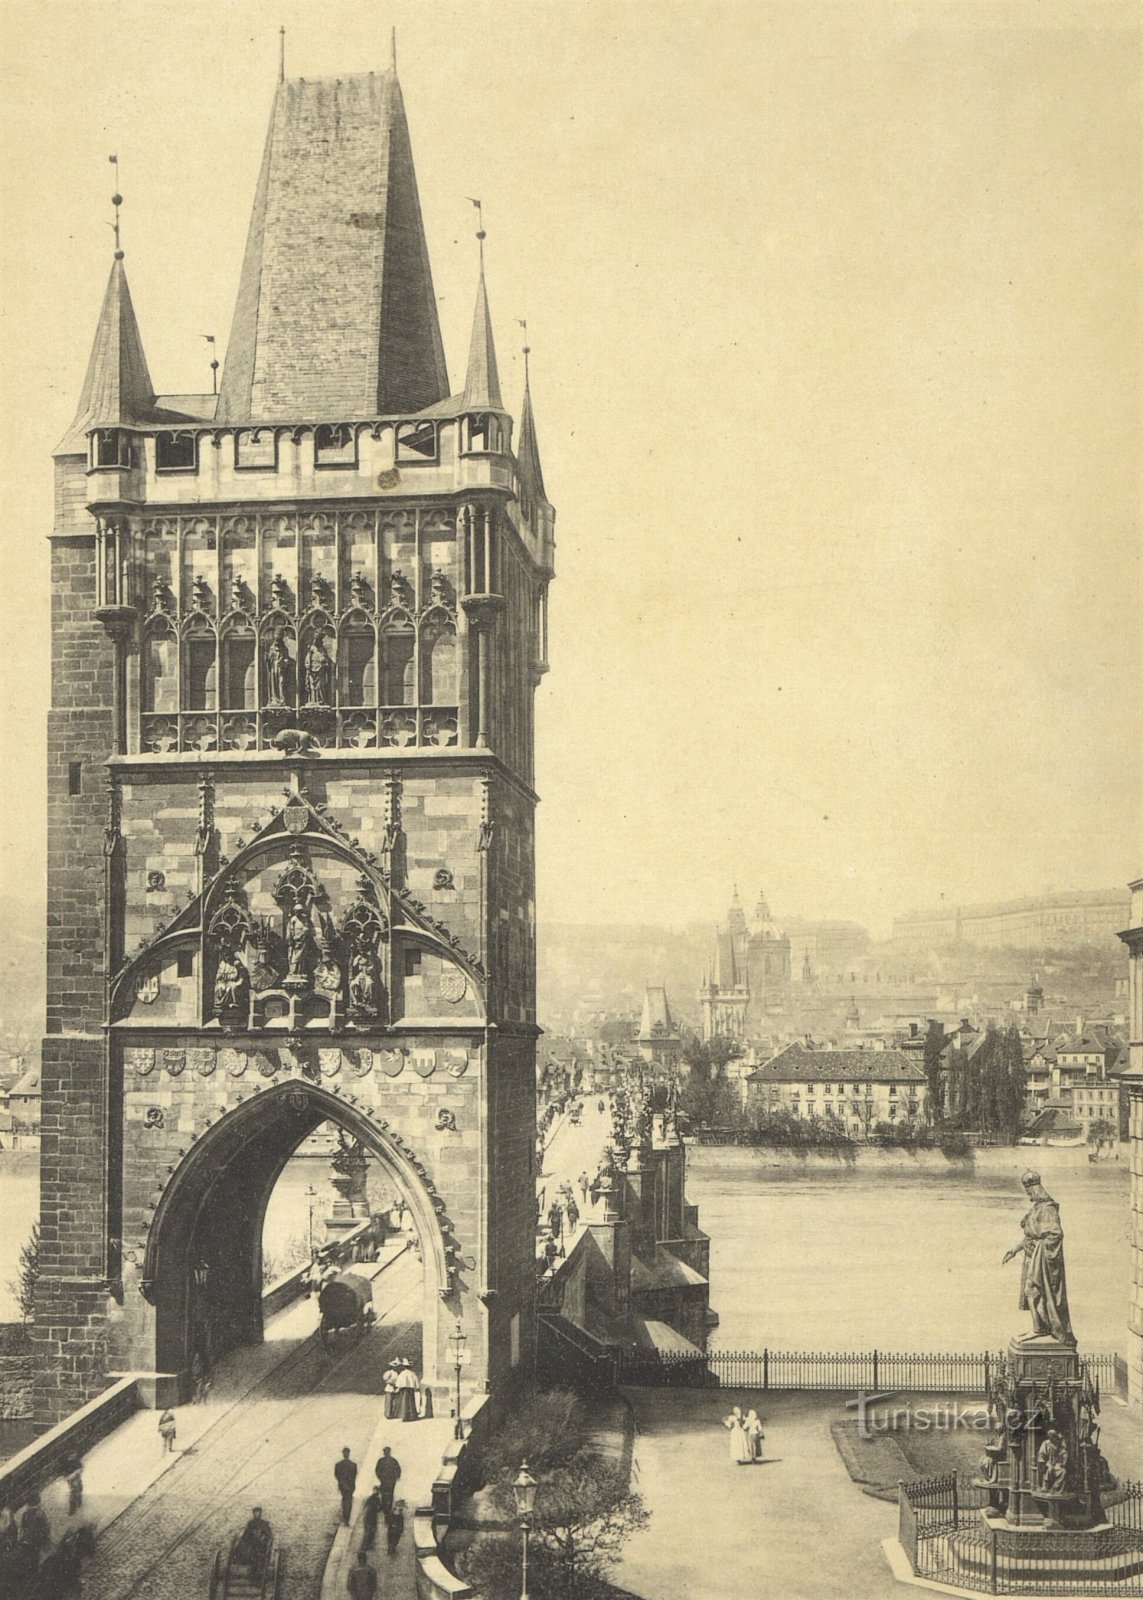 Староместская мостовая башня Праги с памятником Карлу IV. (до 1908 г.)